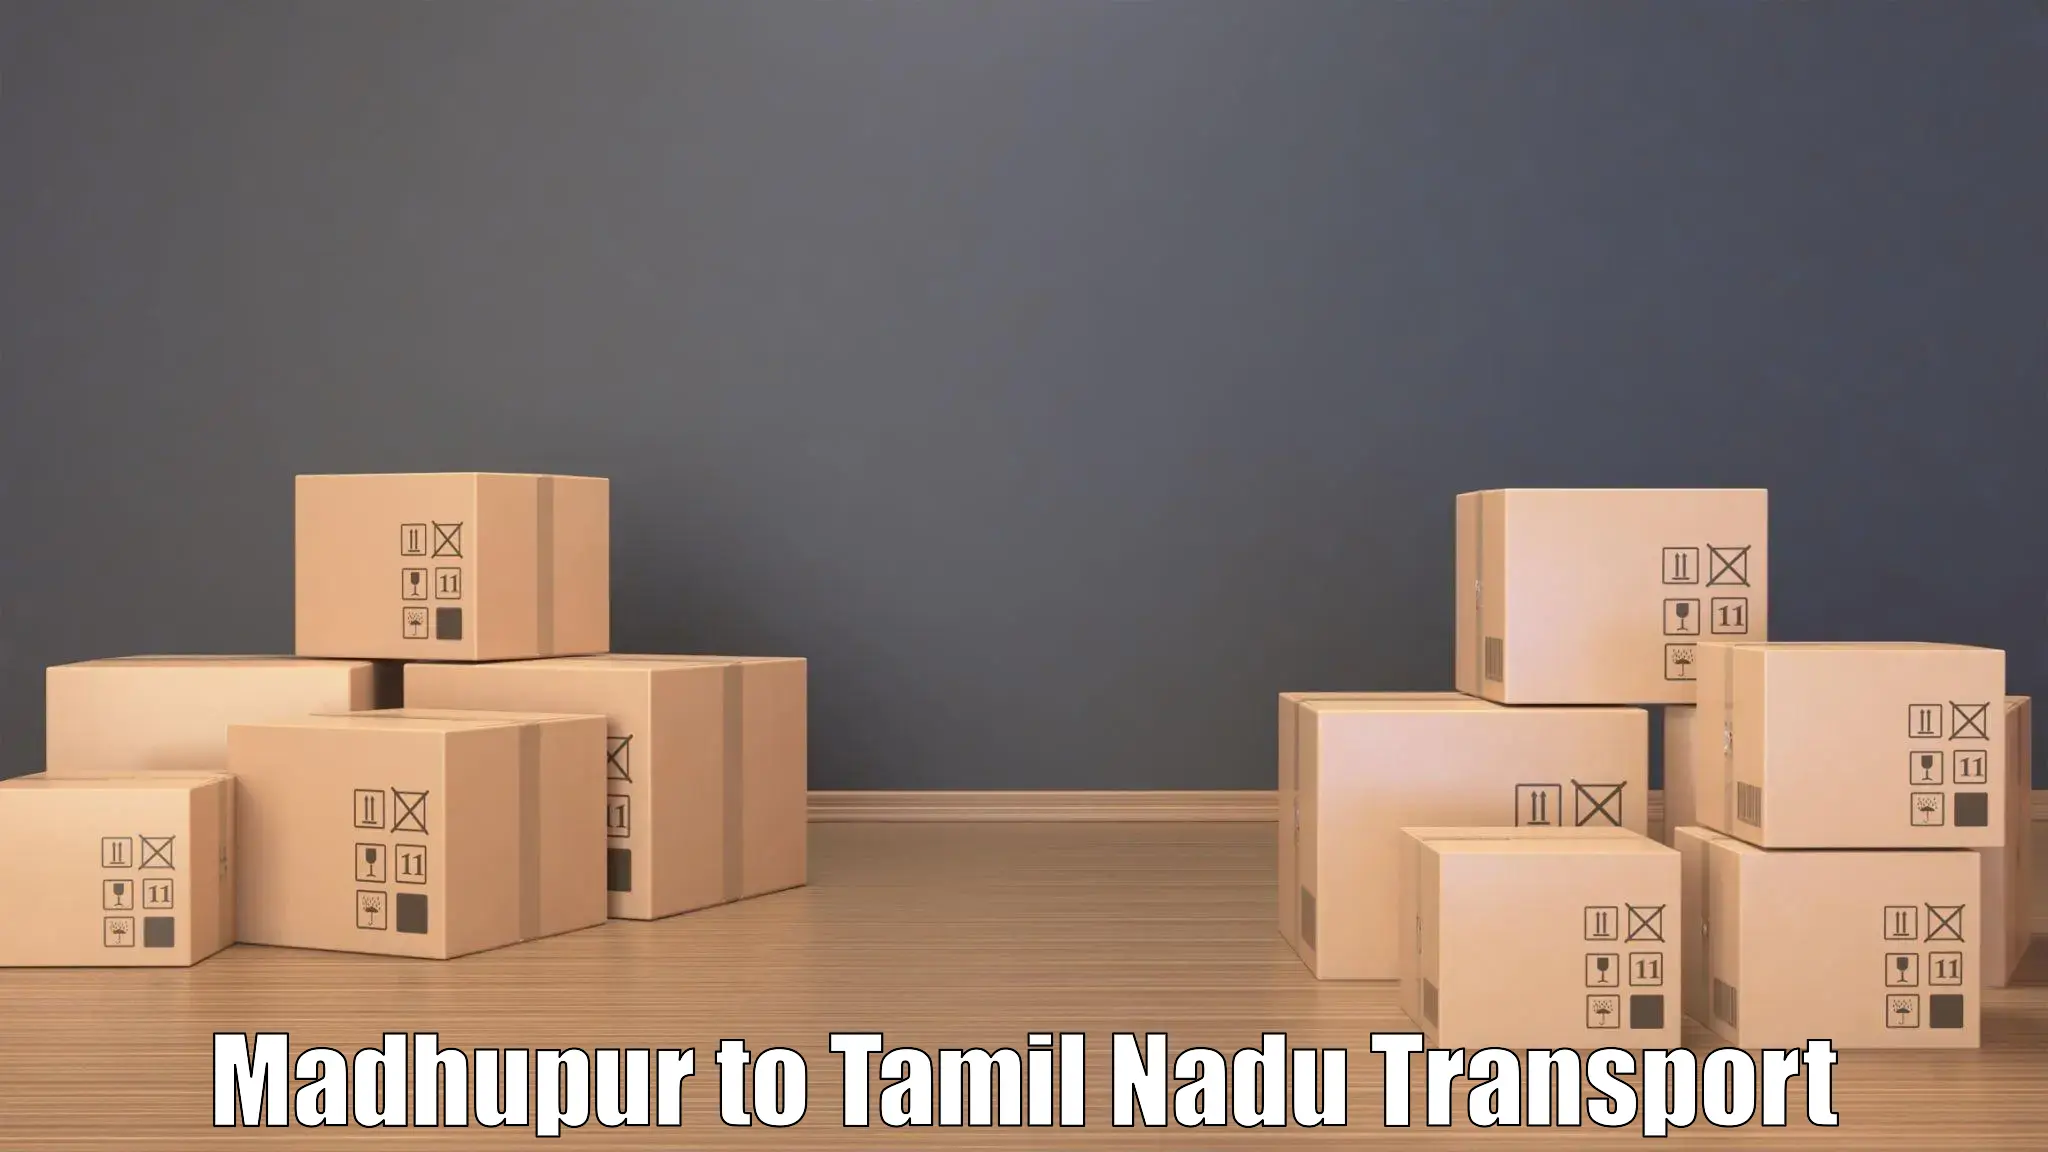 Cargo train transport services Madhupur to Usilampatti